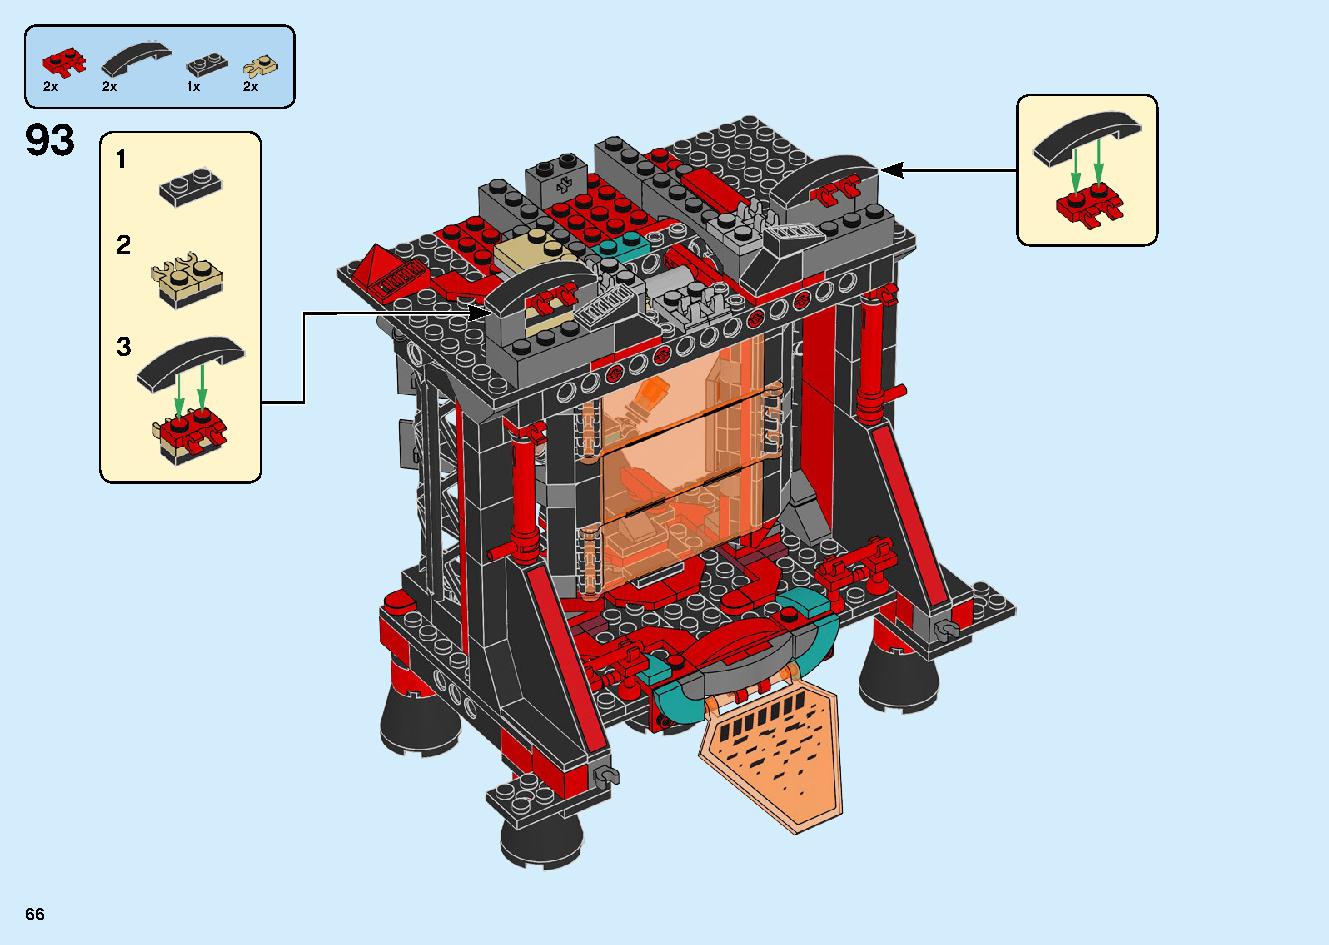 マッドキング神殿 71712 レゴの商品情報 レゴの説明書・組立方法 66 page